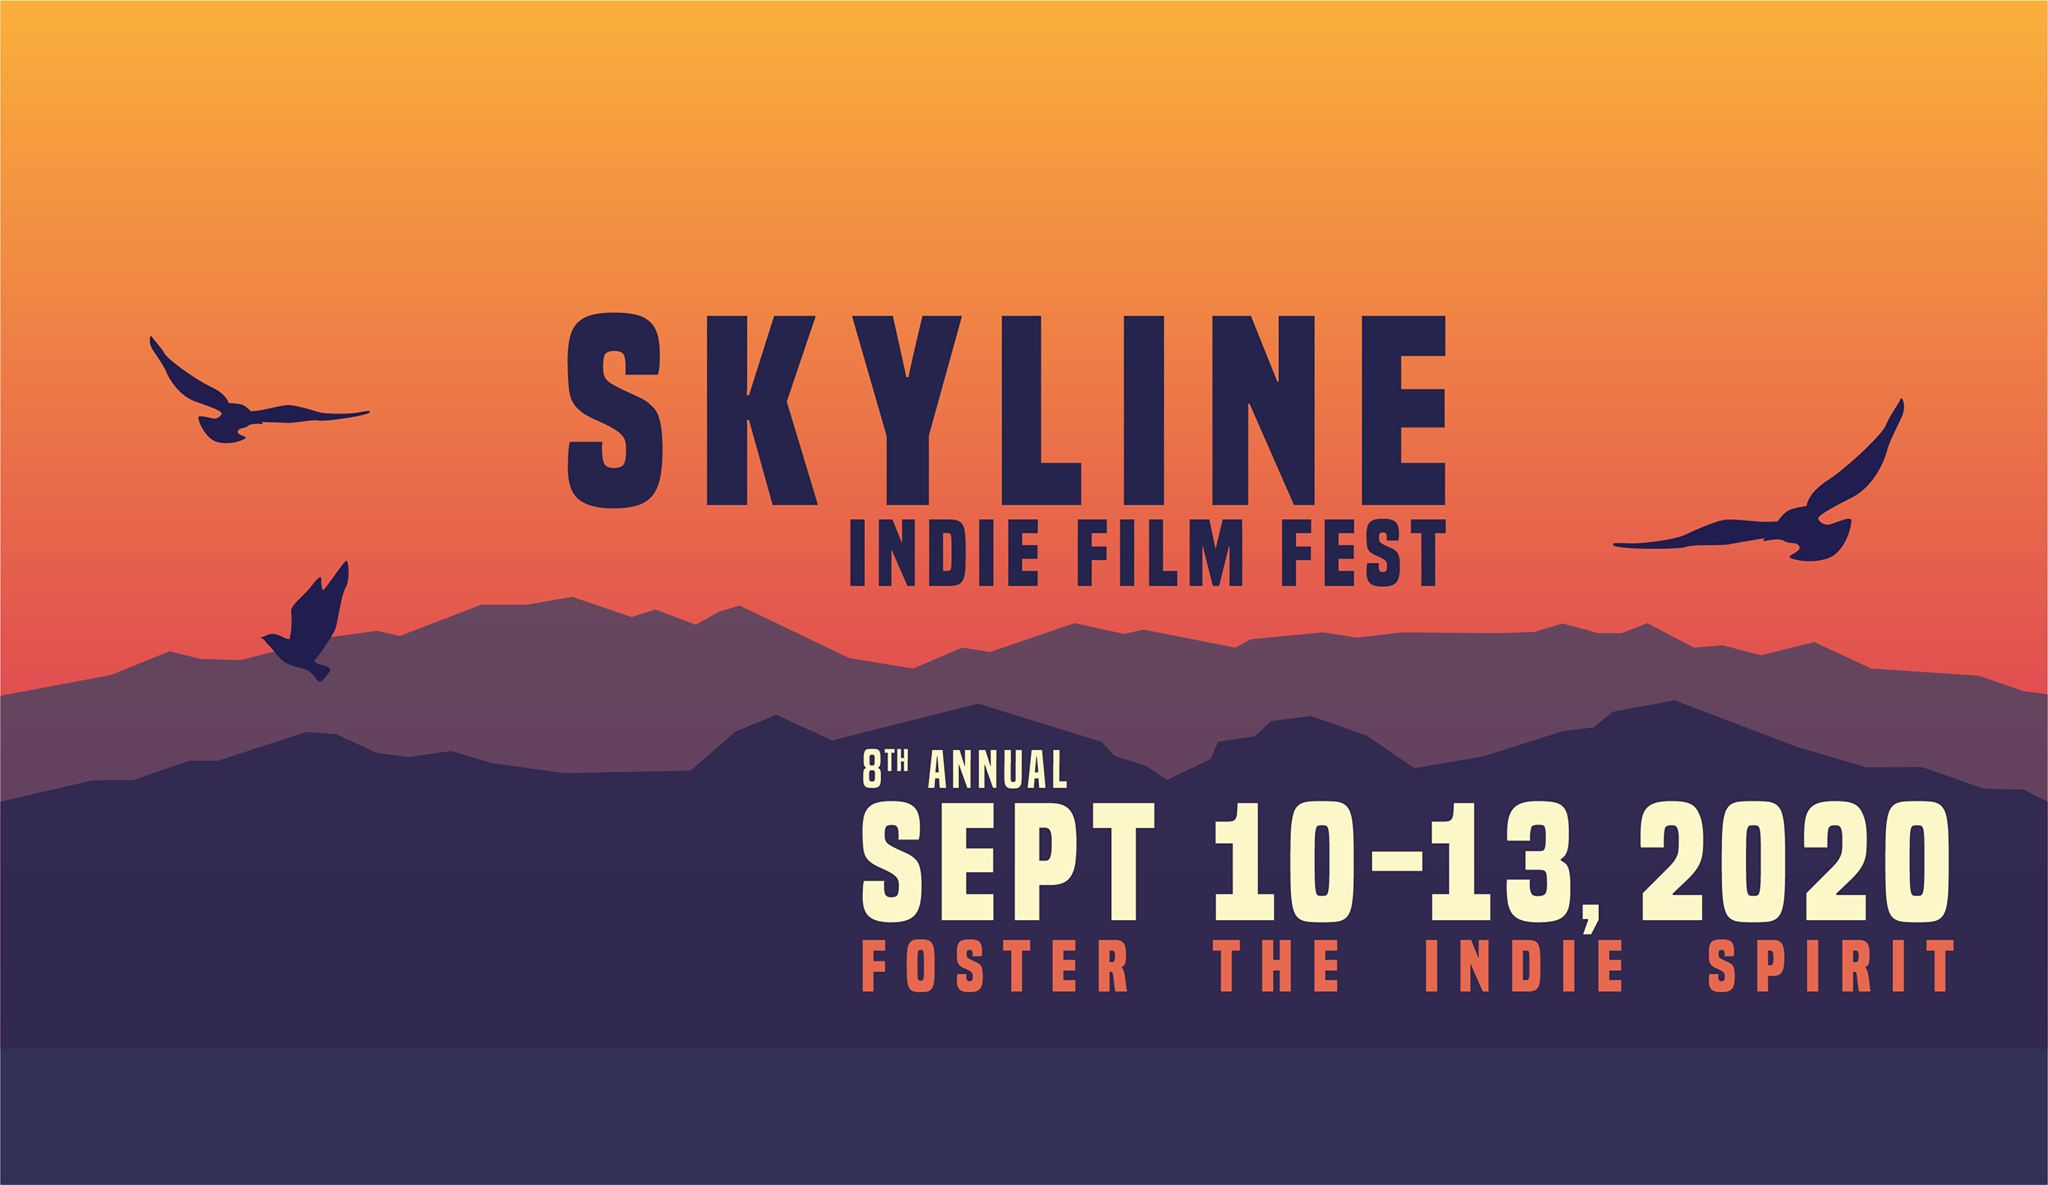 8th Annual Skyline Indie Film Fest